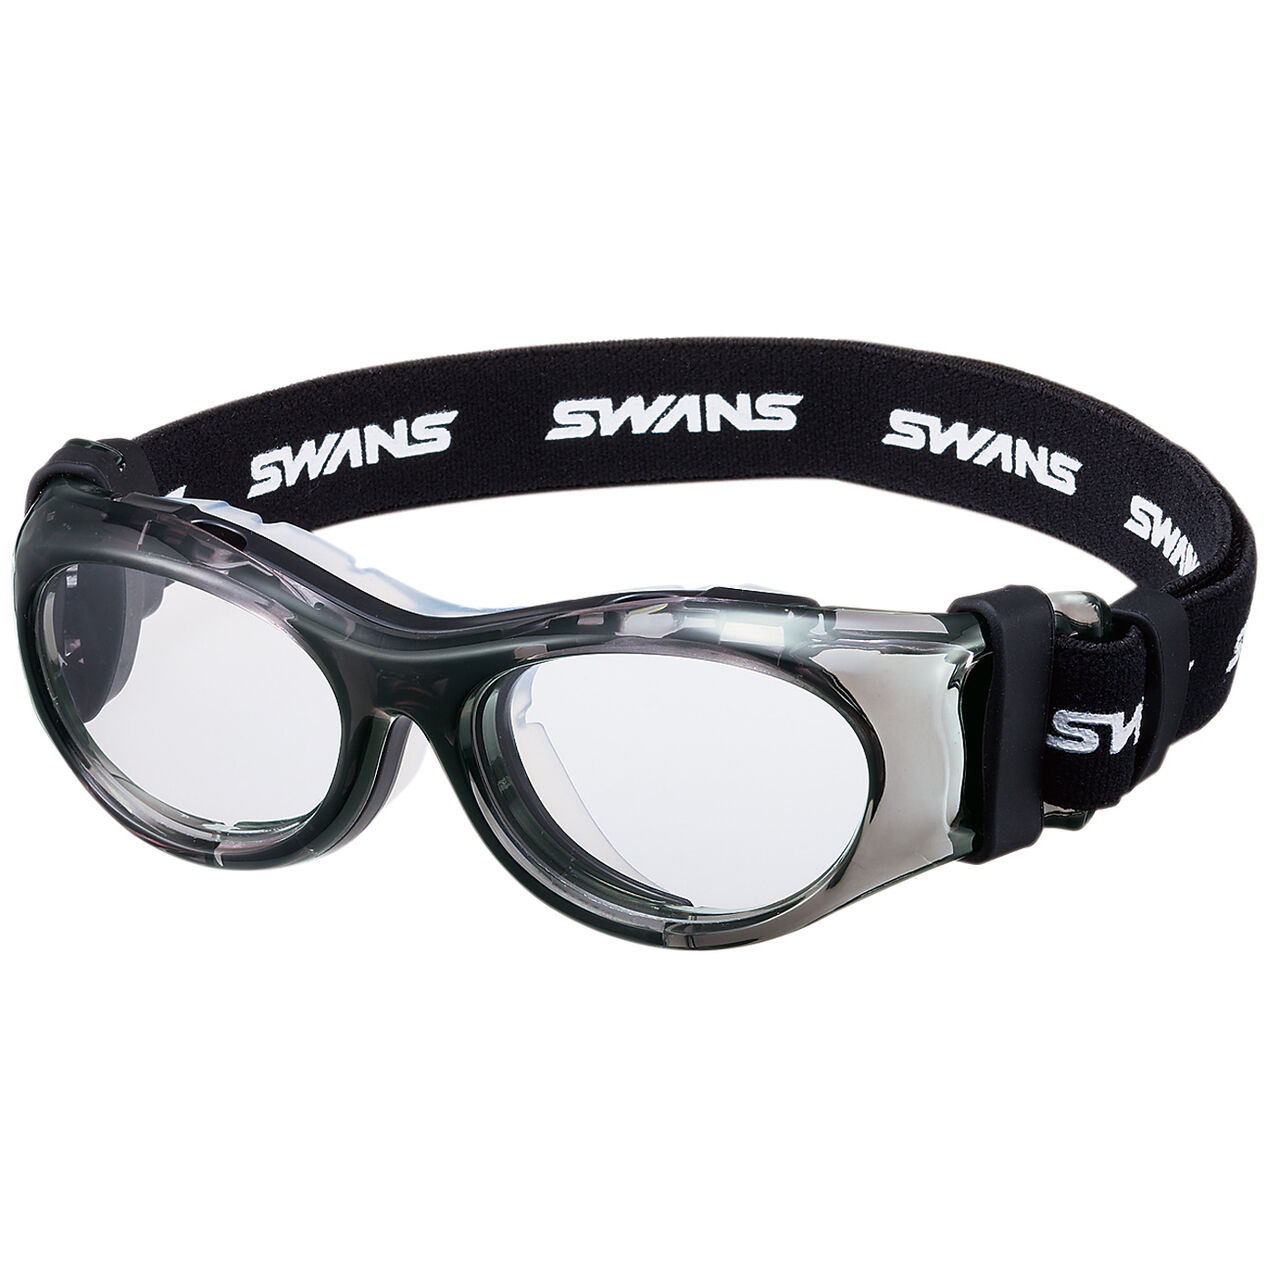 SWANS (速安视) SVS-600N CLSM 透明烟雾色 运动护目镜,Opt2, large image number 0